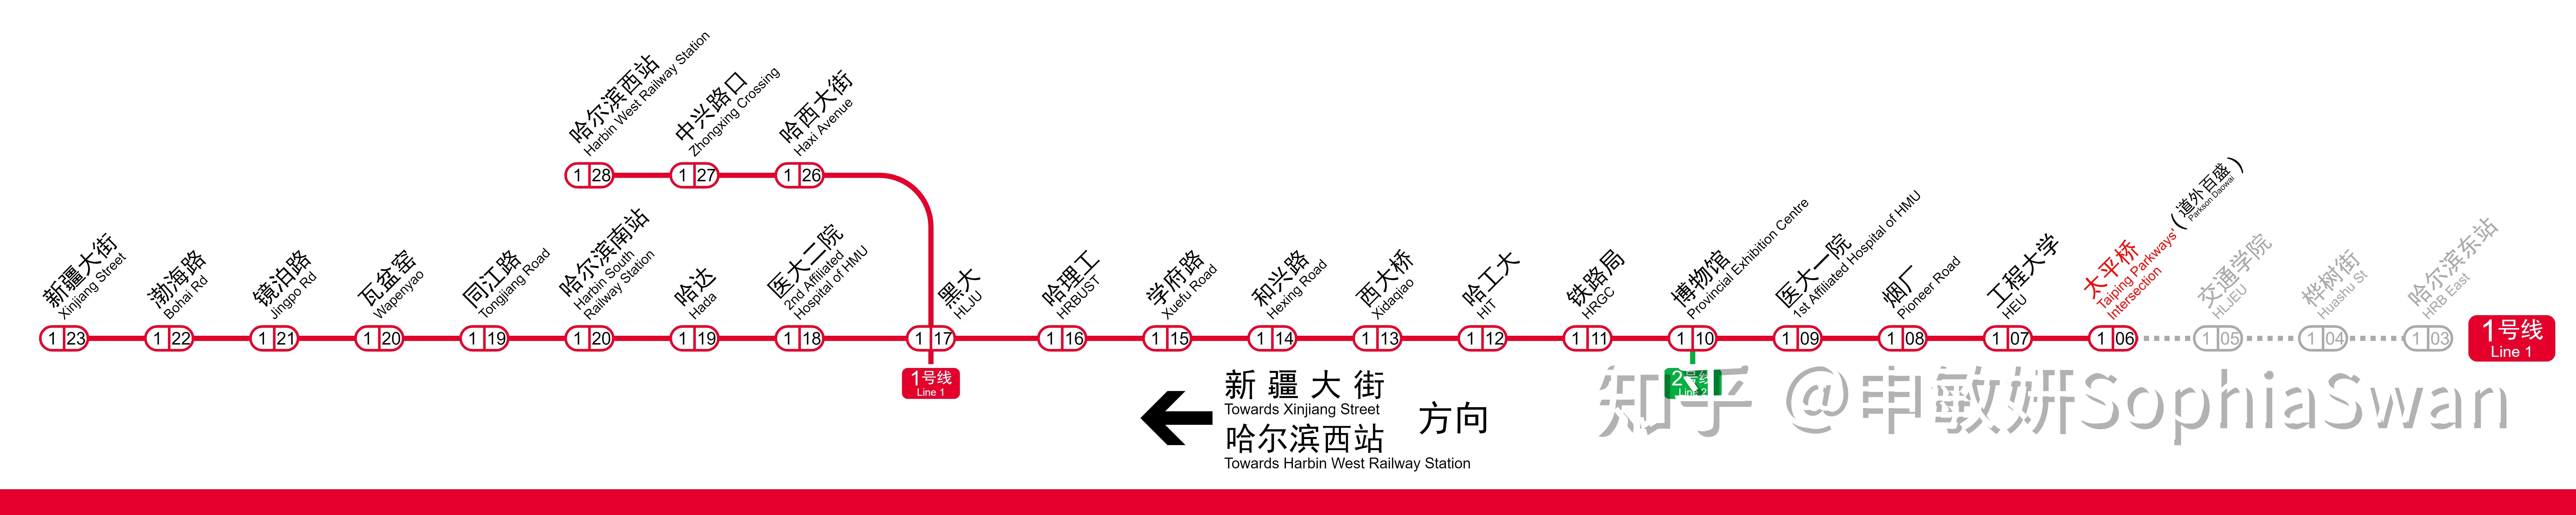 哈尔滨地铁3号线(harbin metro line 3),于2017年1月26日开通运营,是